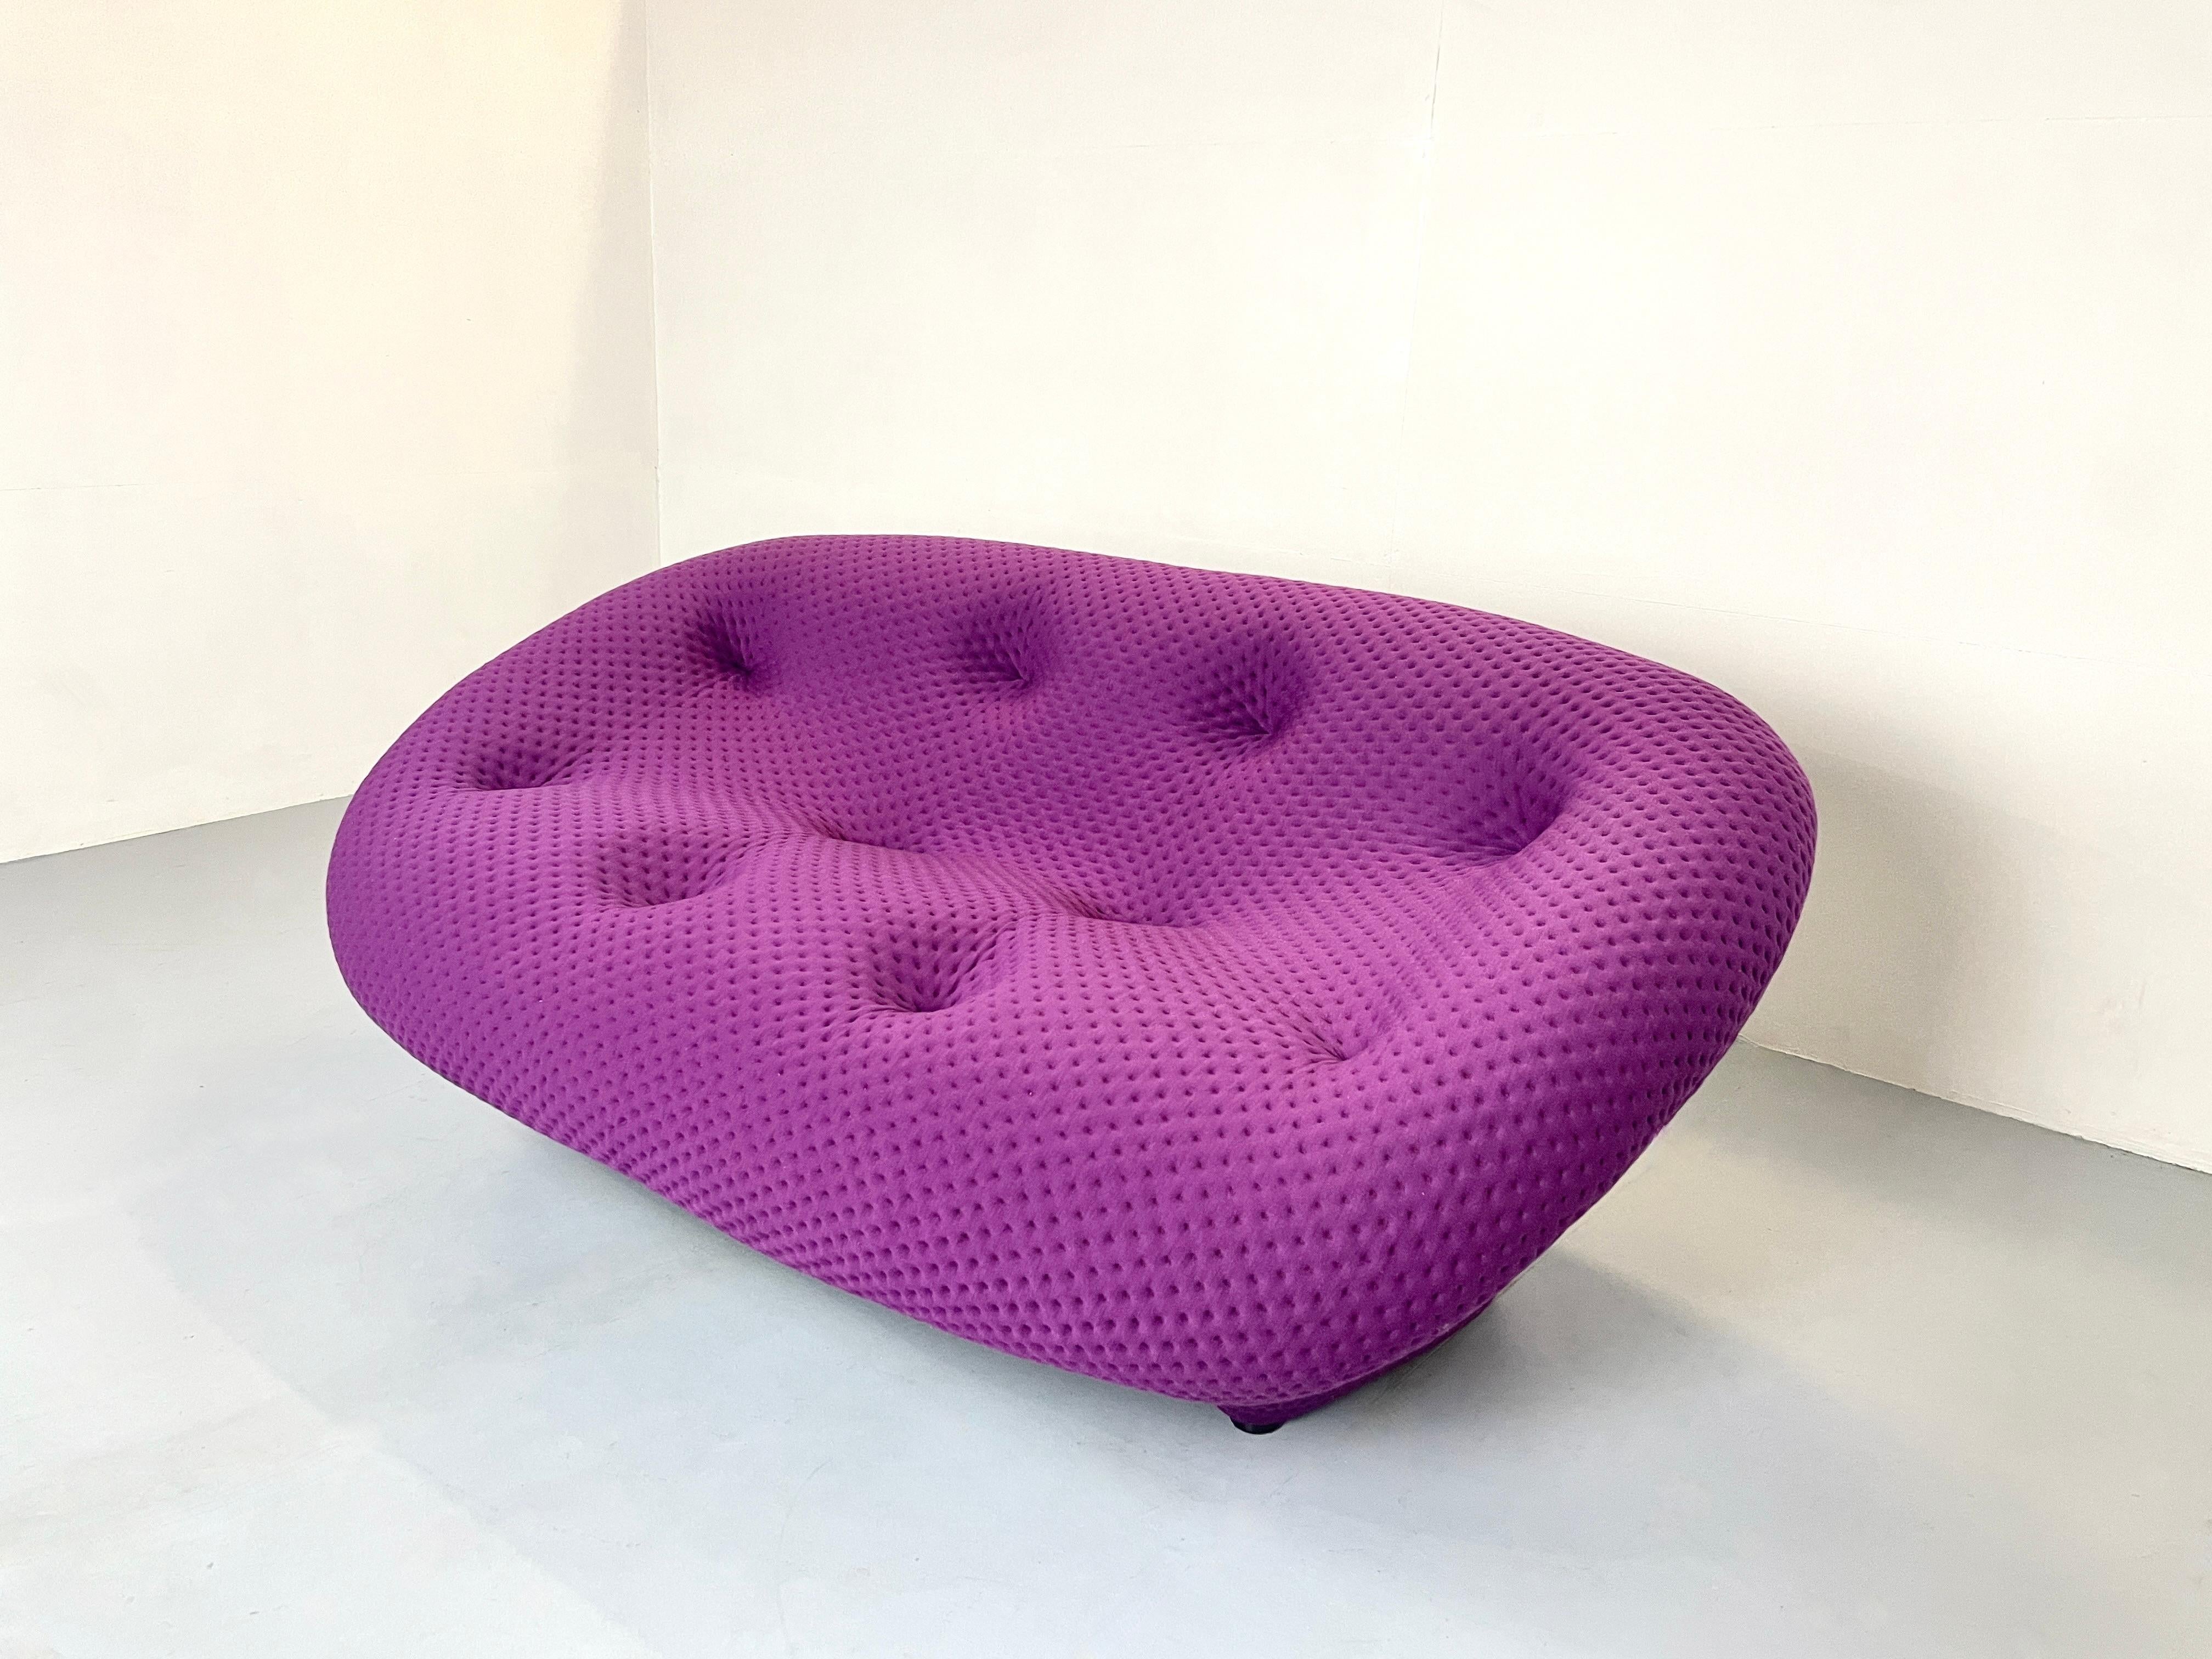 Designer Ronan und Erwan Bourellec


Das Ligne Roset Ploum ist ein äußerst bequemes Sofa aus besonders geschmeidigem Schaumstoff in Kombination mit einem Stretch-Futter. Die Couch lädt zum Verweilen ein. Die Rückenlehne und der Sitz sind gepolstert,